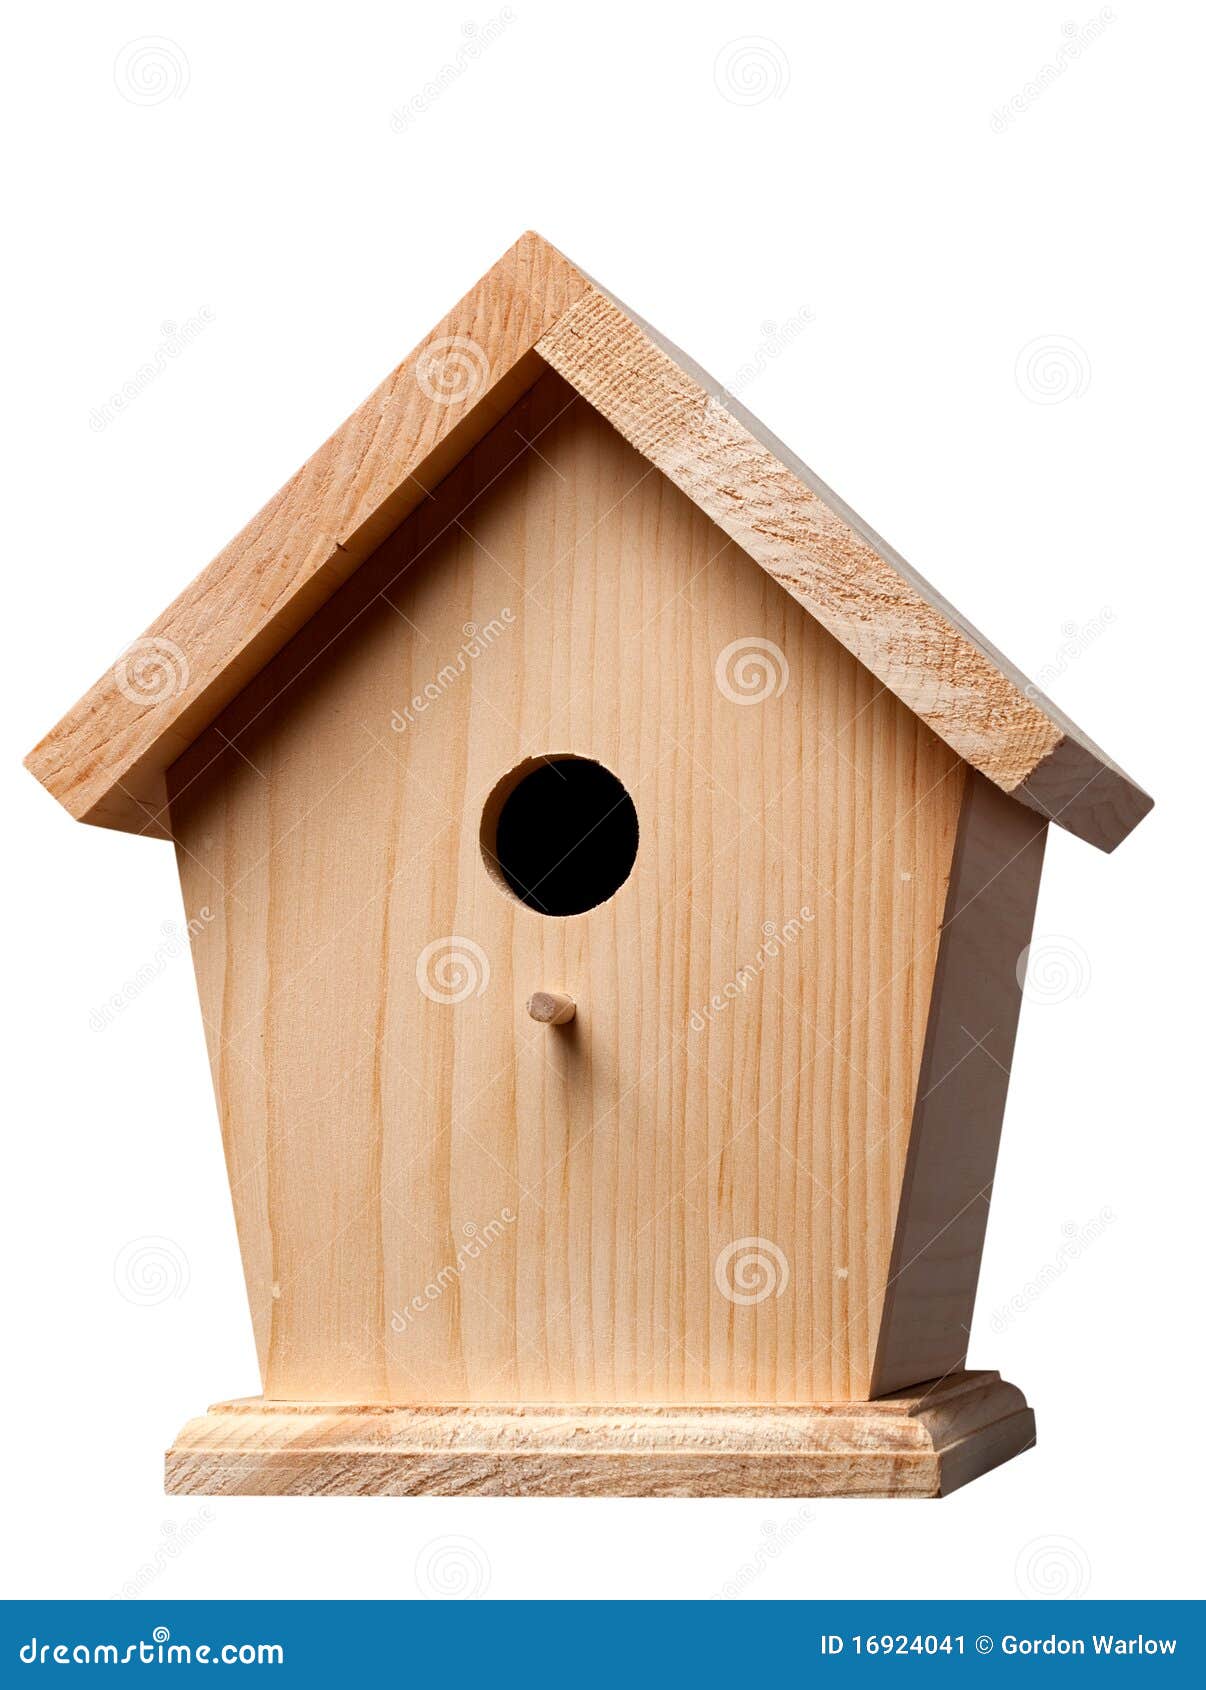 Pine Birdhouse stock image. Image of wooden, hole 